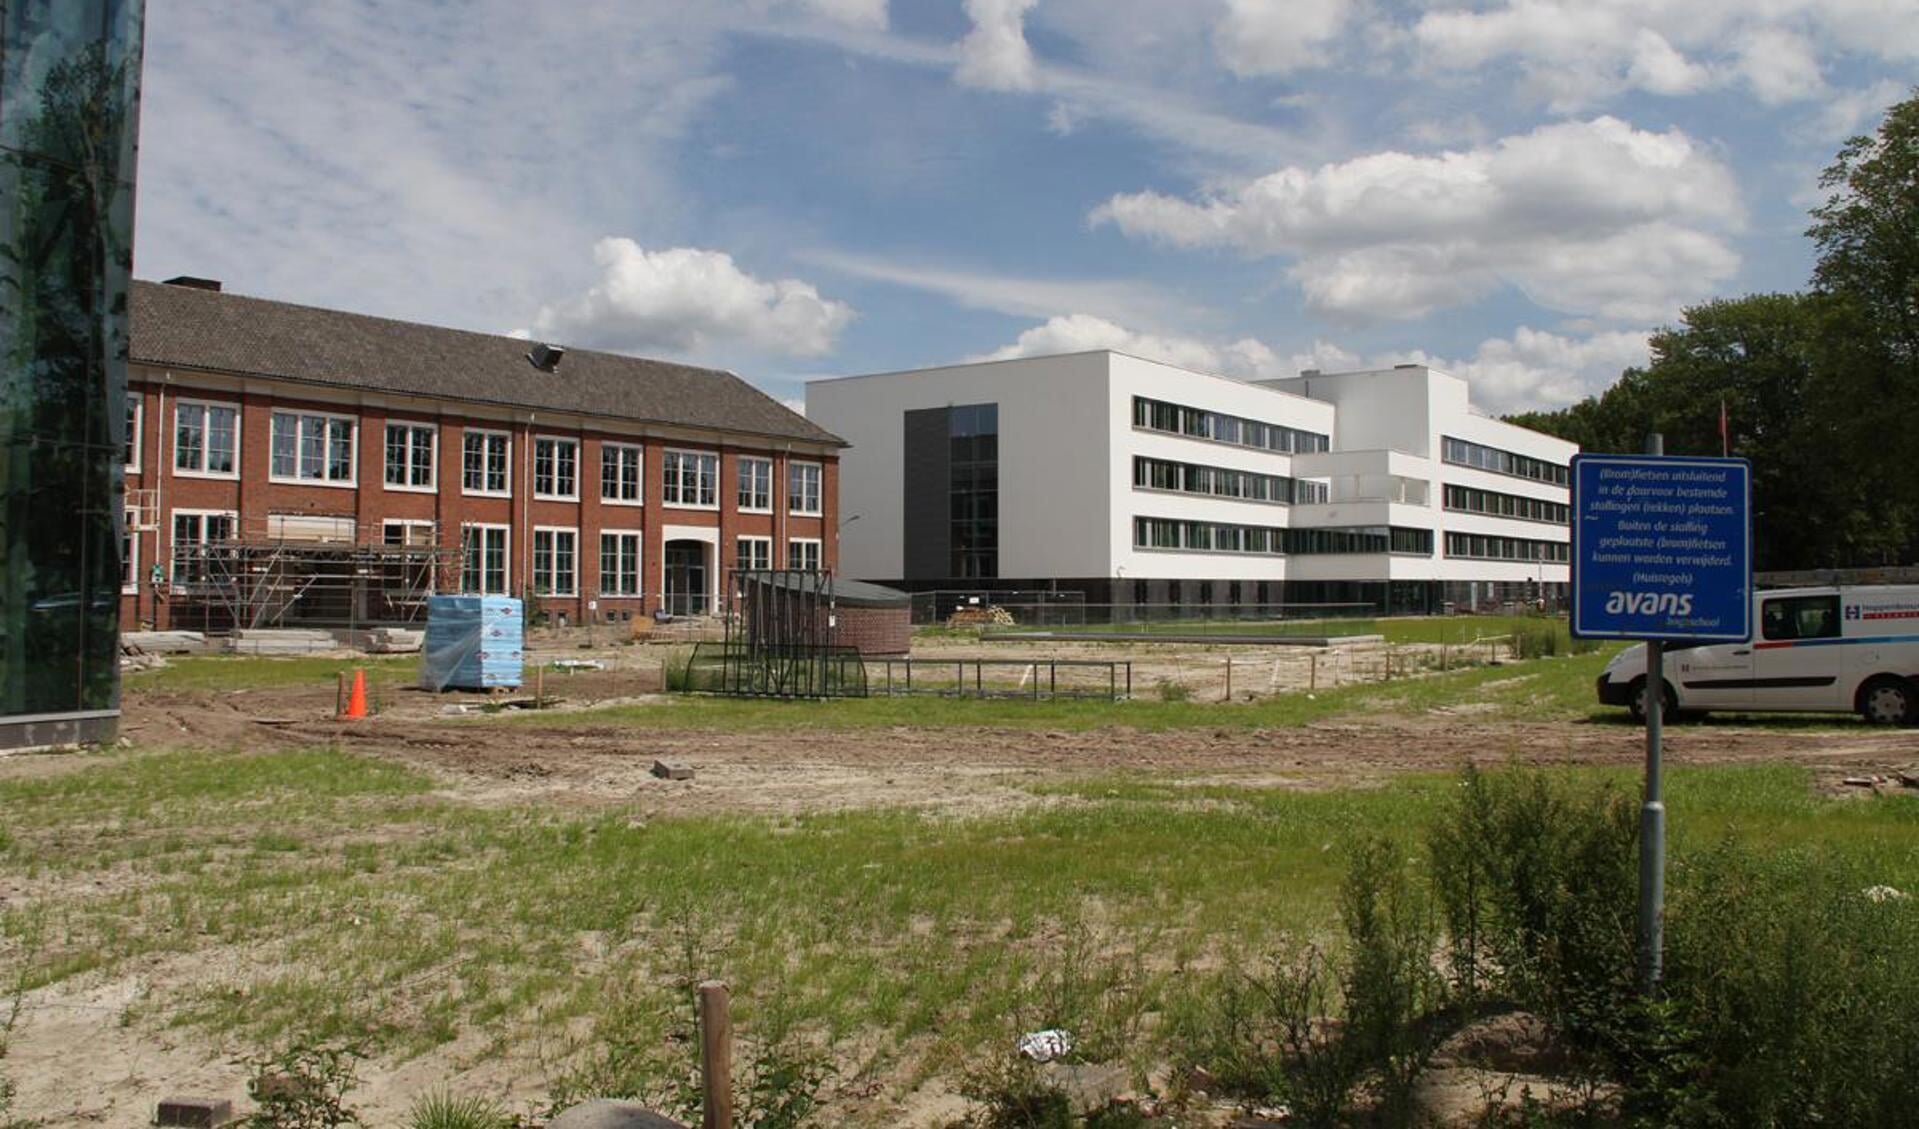 Avans legt de laatste hand aan een bijna twee jaar durende verbouwing aan locatie Lovensdijkstraat.